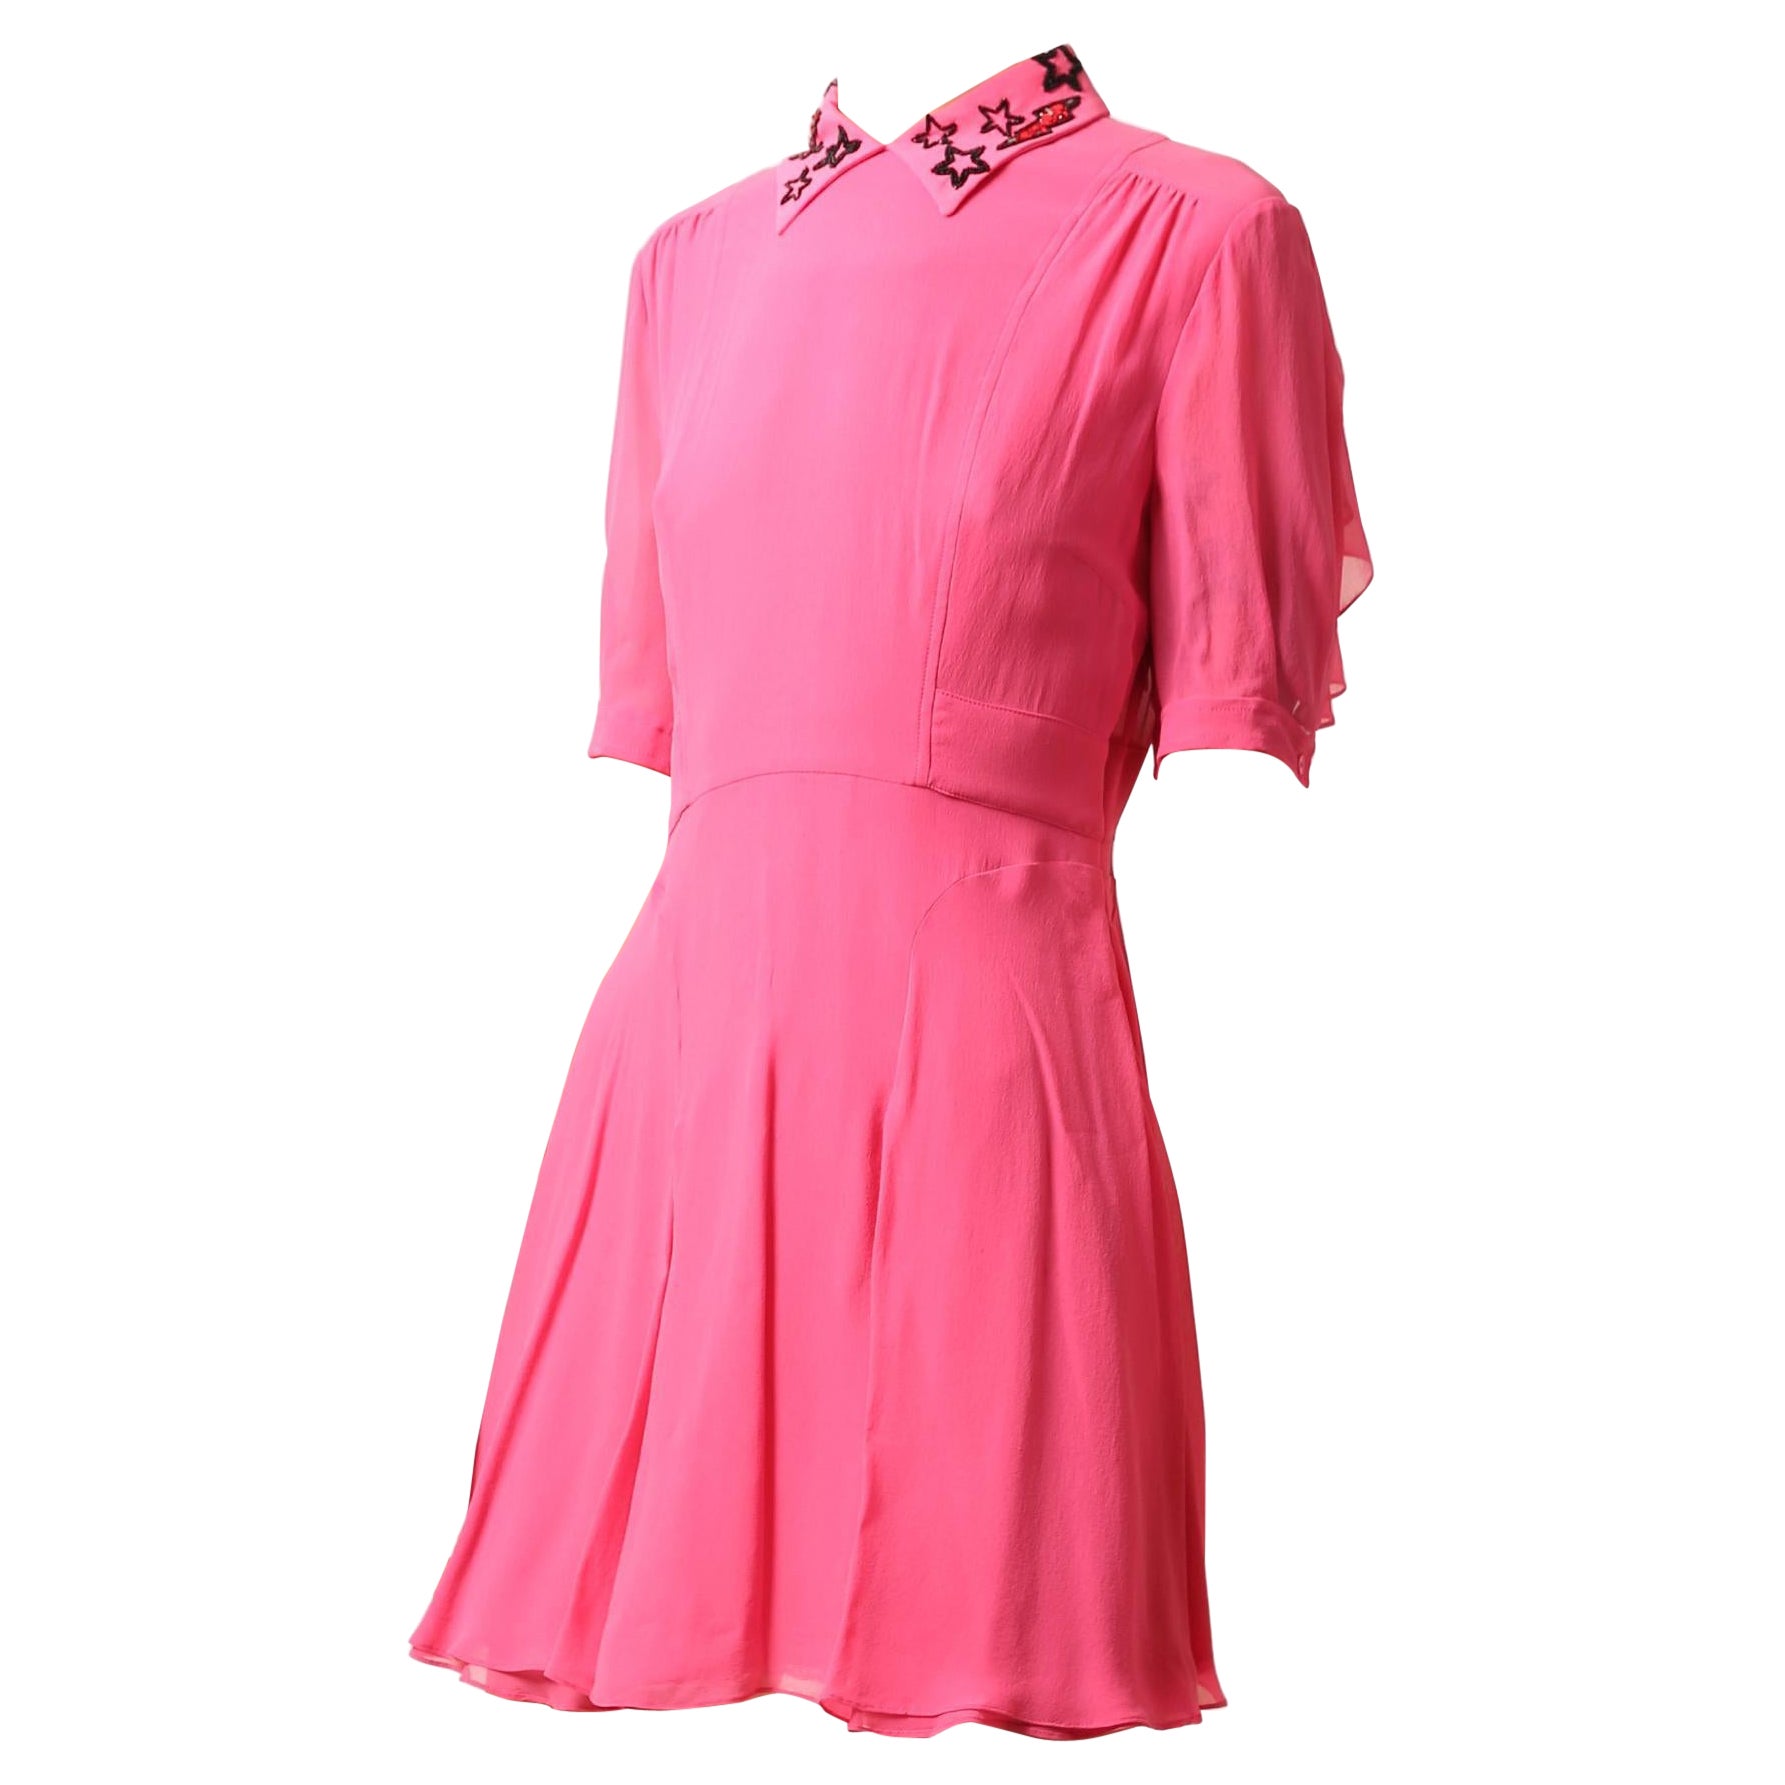 Miu Miu Mini Dress - 12 For Sale on 1stDibs | miu miu green dress 